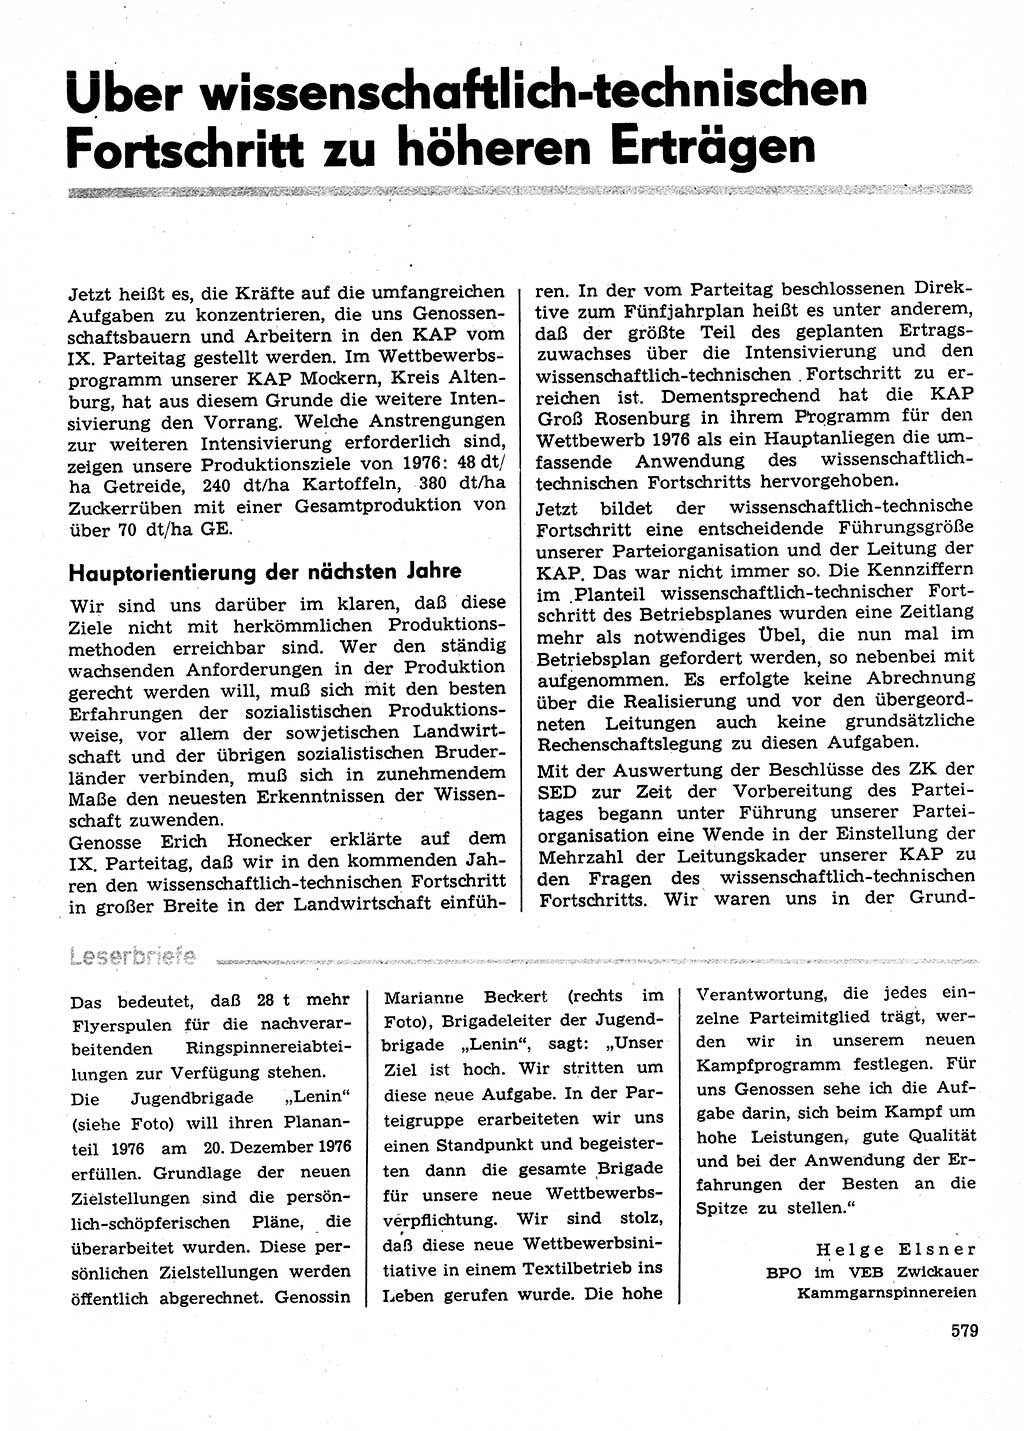 Neuer Weg (NW), Organ des Zentralkomitees (ZK) der SED (Sozialistische Einheitspartei Deutschlands) für Fragen des Parteilebens, 31. Jahrgang [Deutsche Demokratische Republik (DDR)] 1976, Seite 579 (NW ZK SED DDR 1976, S. 579)